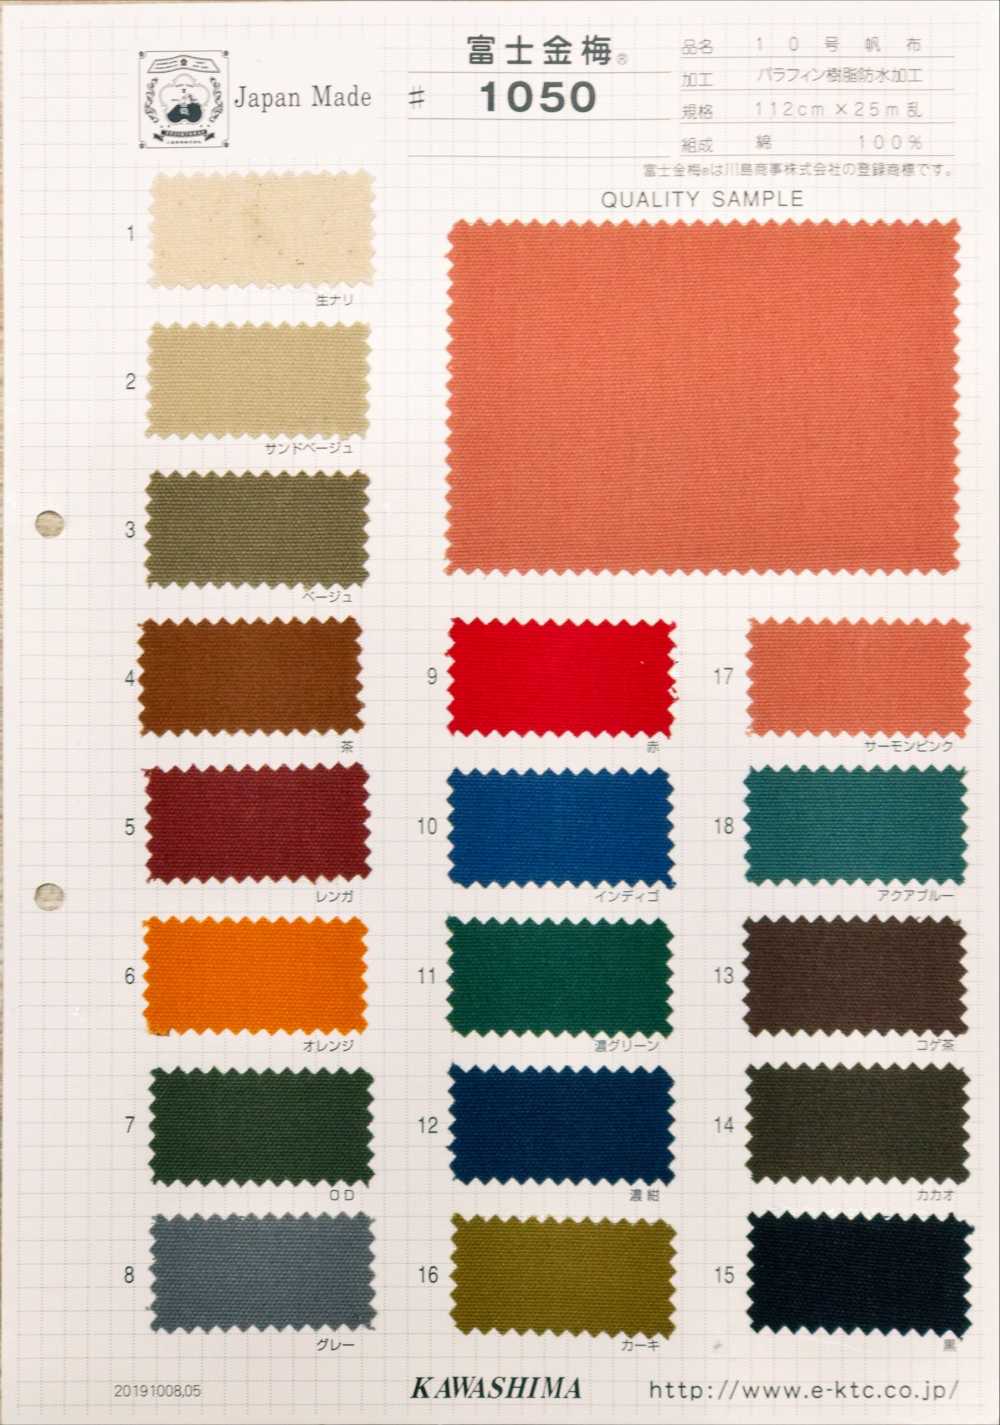 1050 Fujikinbai Kinume No. 10 Canvas Resina De Parafina Impermeable[Fabrica Textil] Ciruela Dorada Fuji